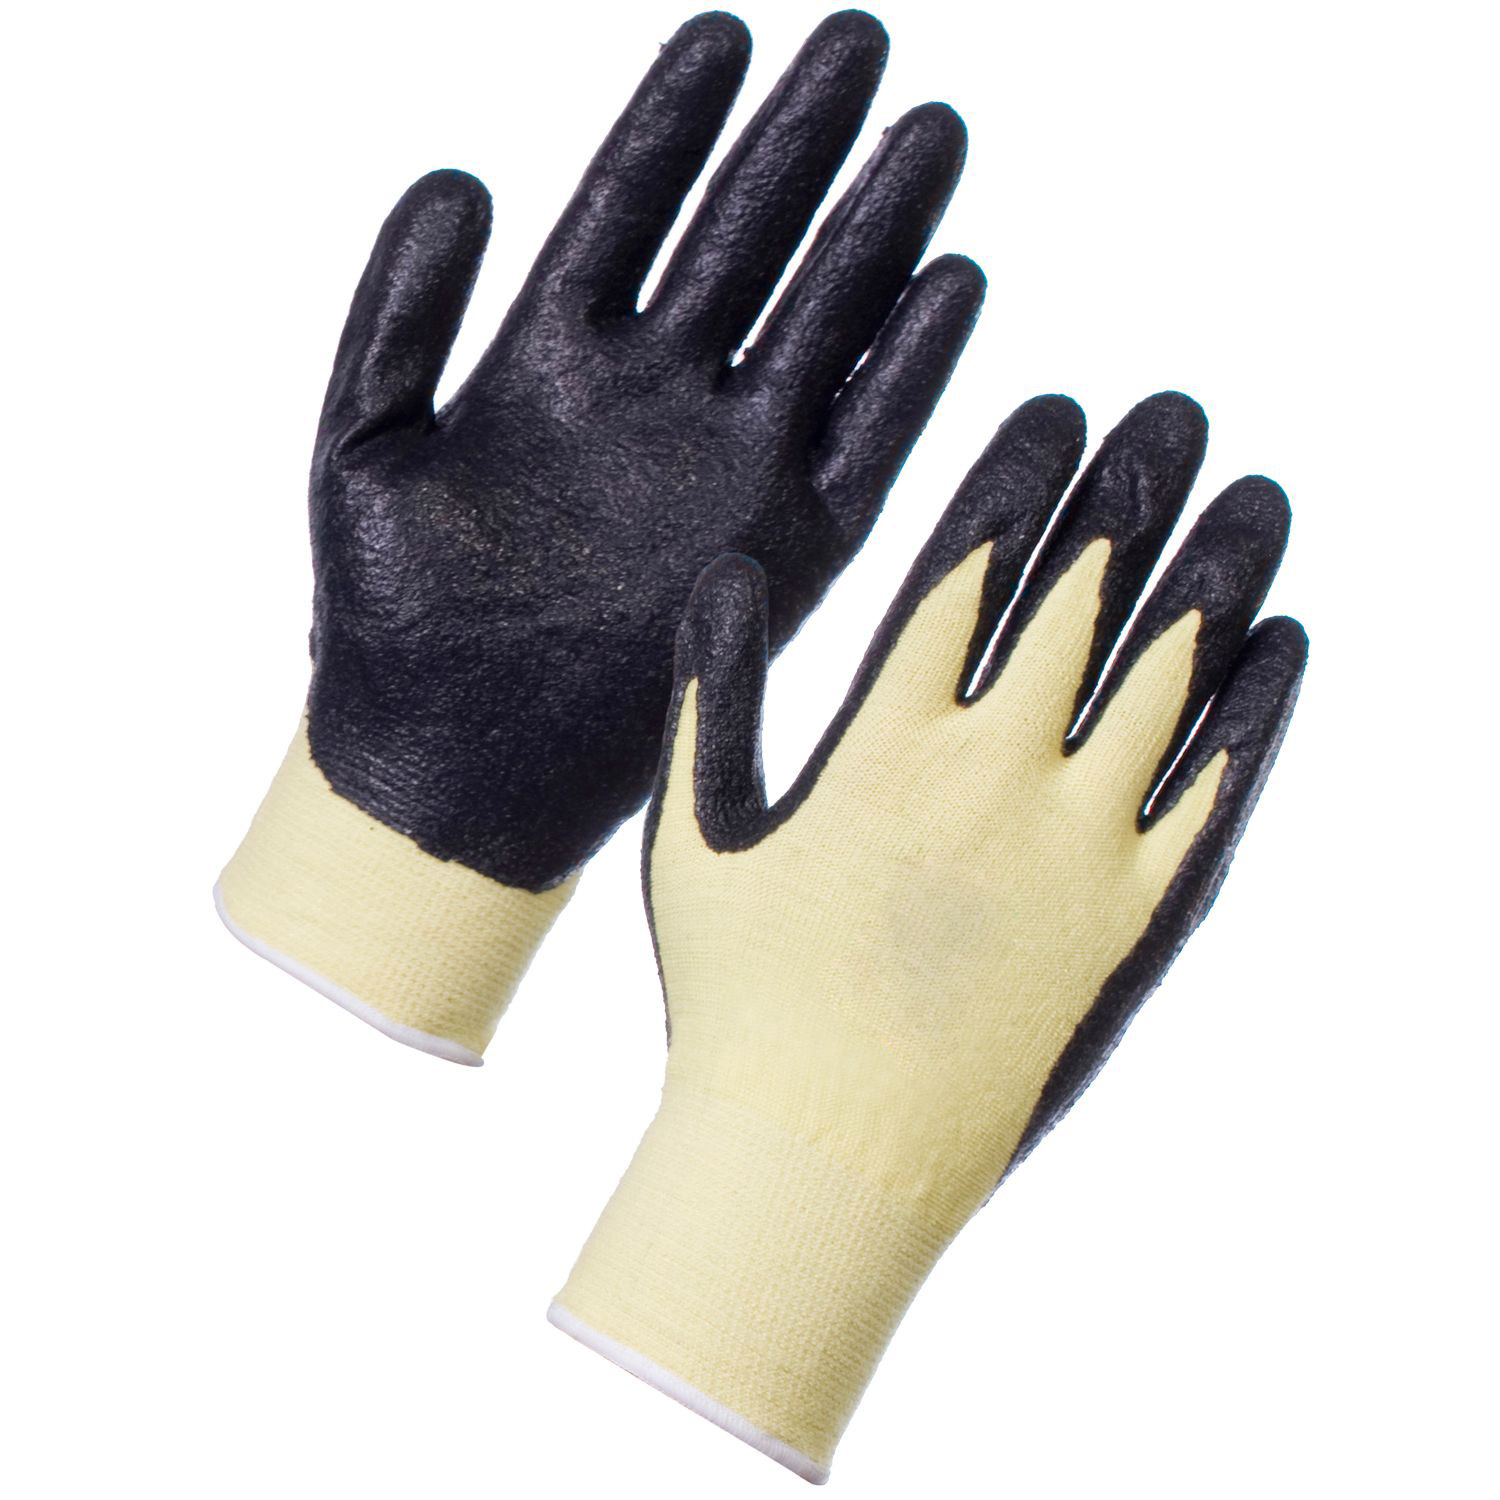  Kevlar Black Jack Gloves